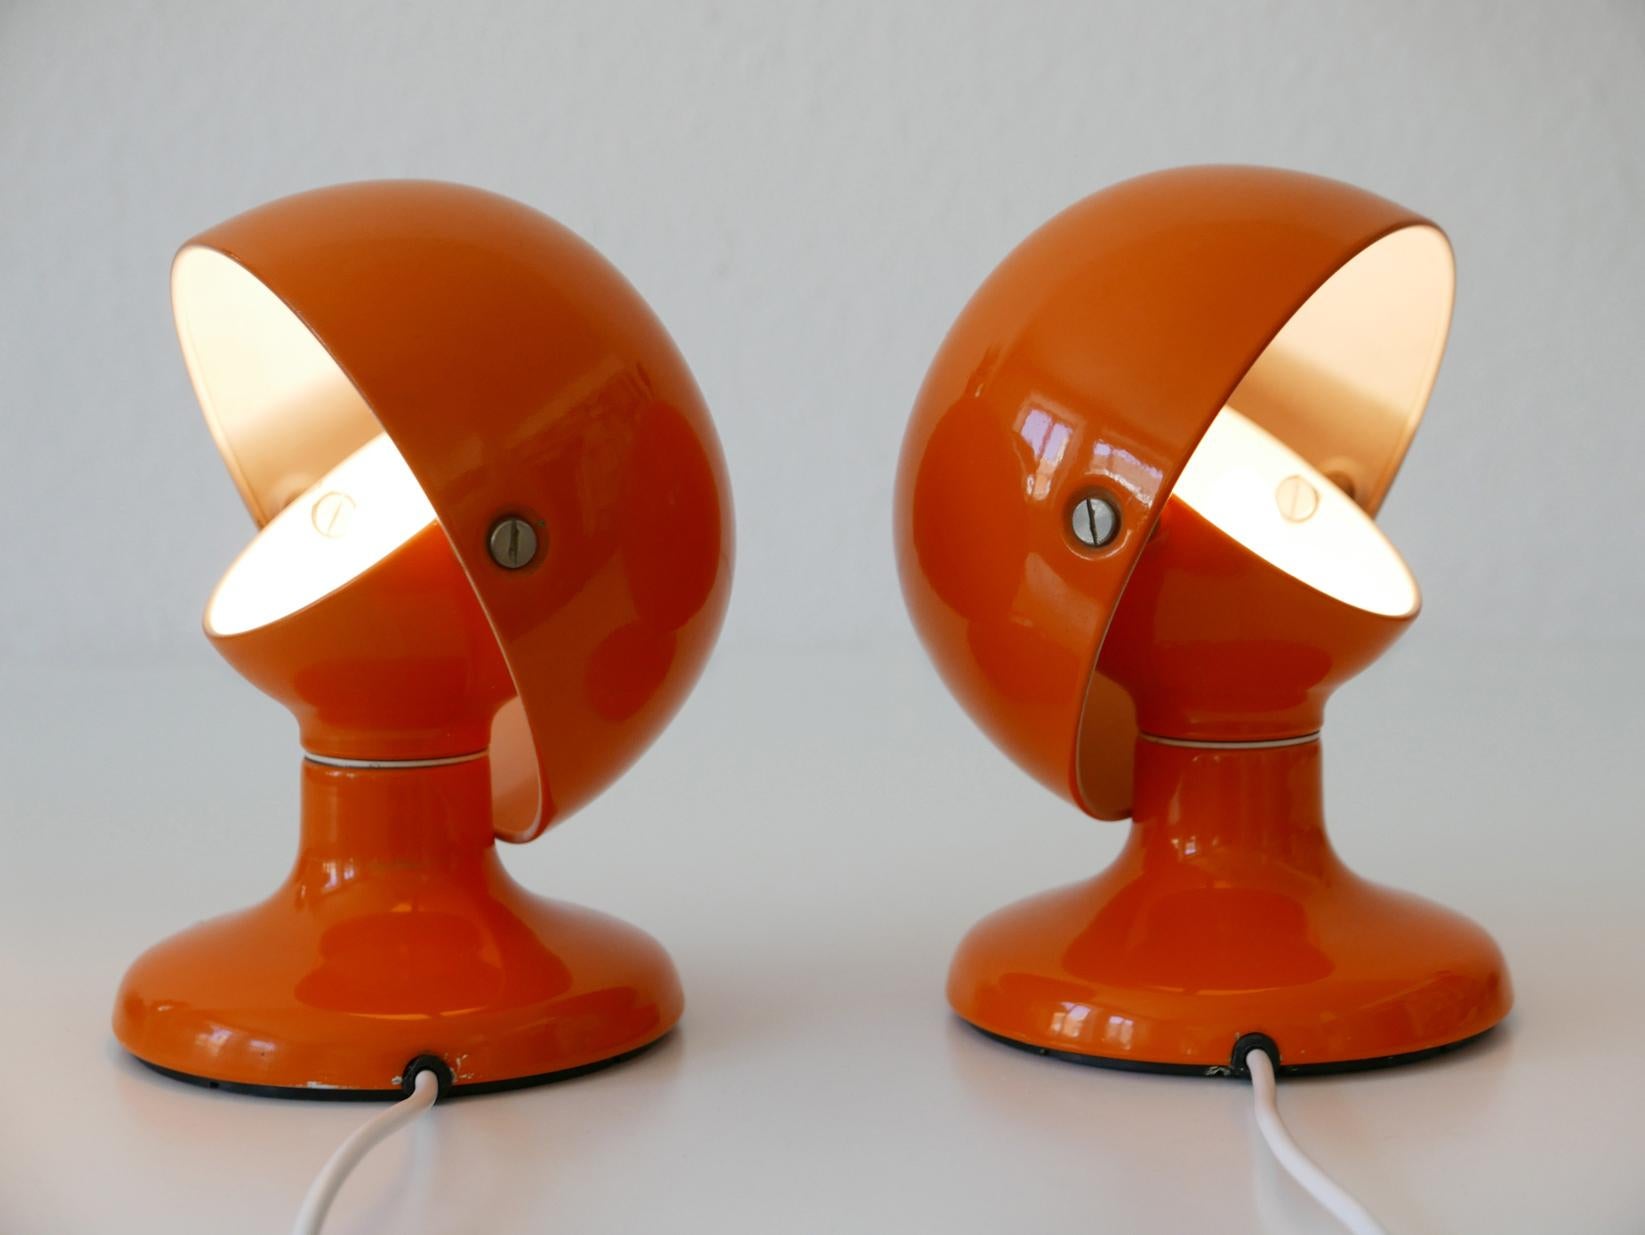 Paire d'étonnantes lampes de table d'appoint Jucker de style moderne du milieu du siècle. Conçu par Afra & Tobia Scarpa, 1963. Fabriqué par Flos, Italie, années 1960.

Exécutée en métal laqué orange, chaque lampe est livrée avec un porte-ampoule à